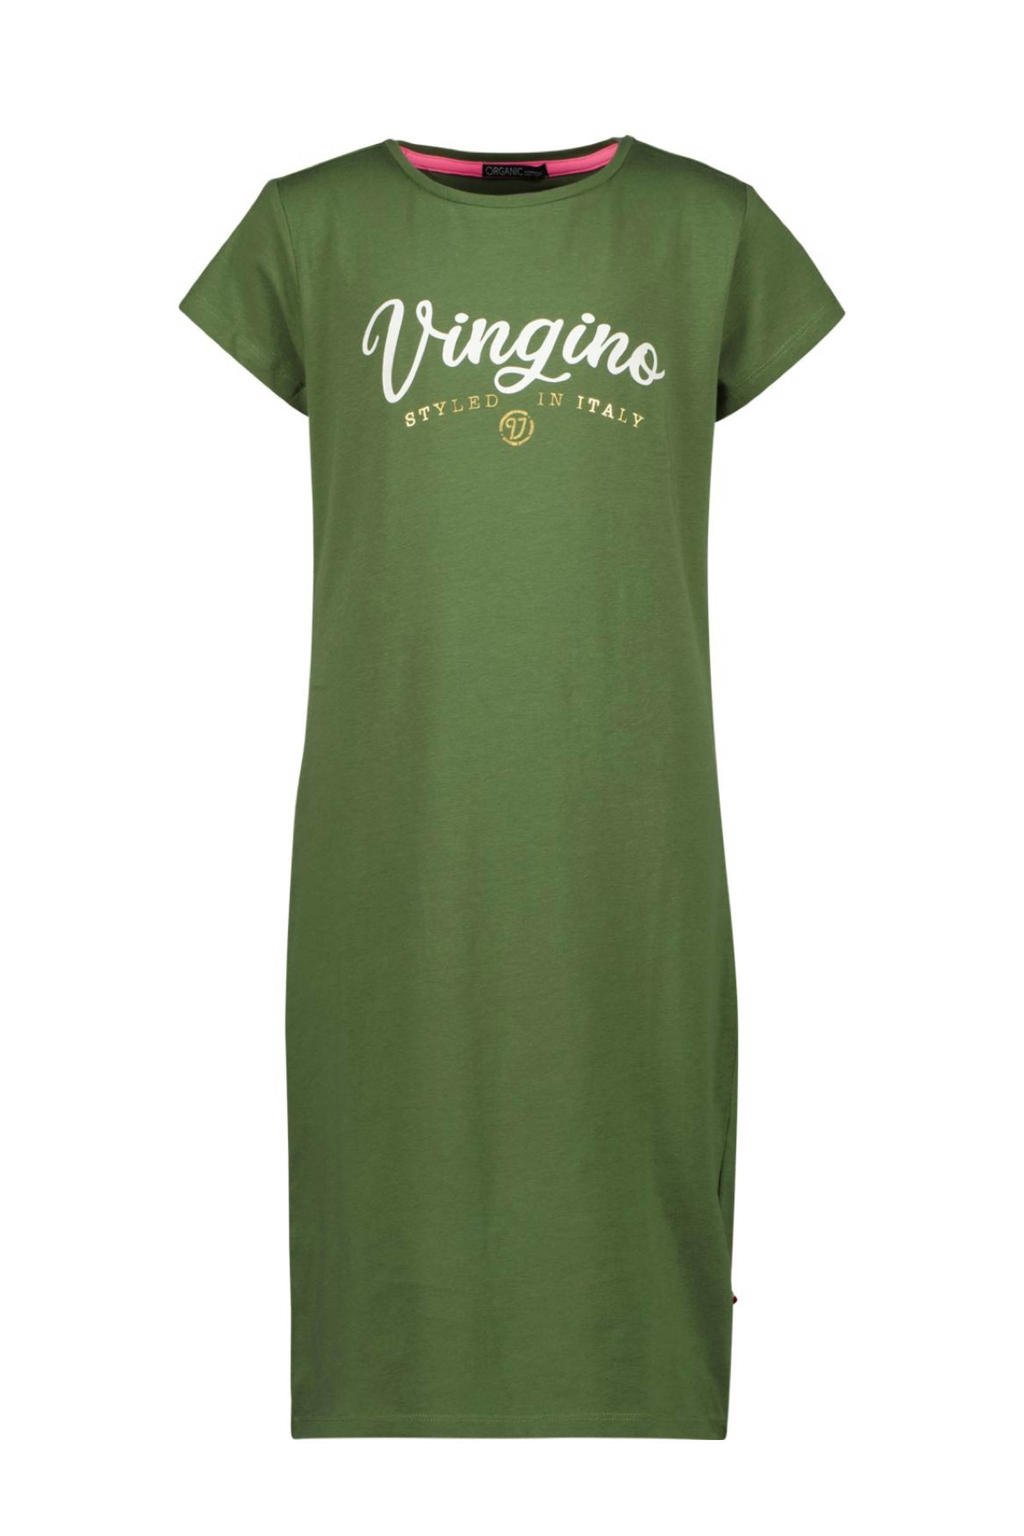 Groene meisjes Vingino Essentials T-shirtjurk army van stretchkatoen met logo dessin, korte mouwen en ronde hals